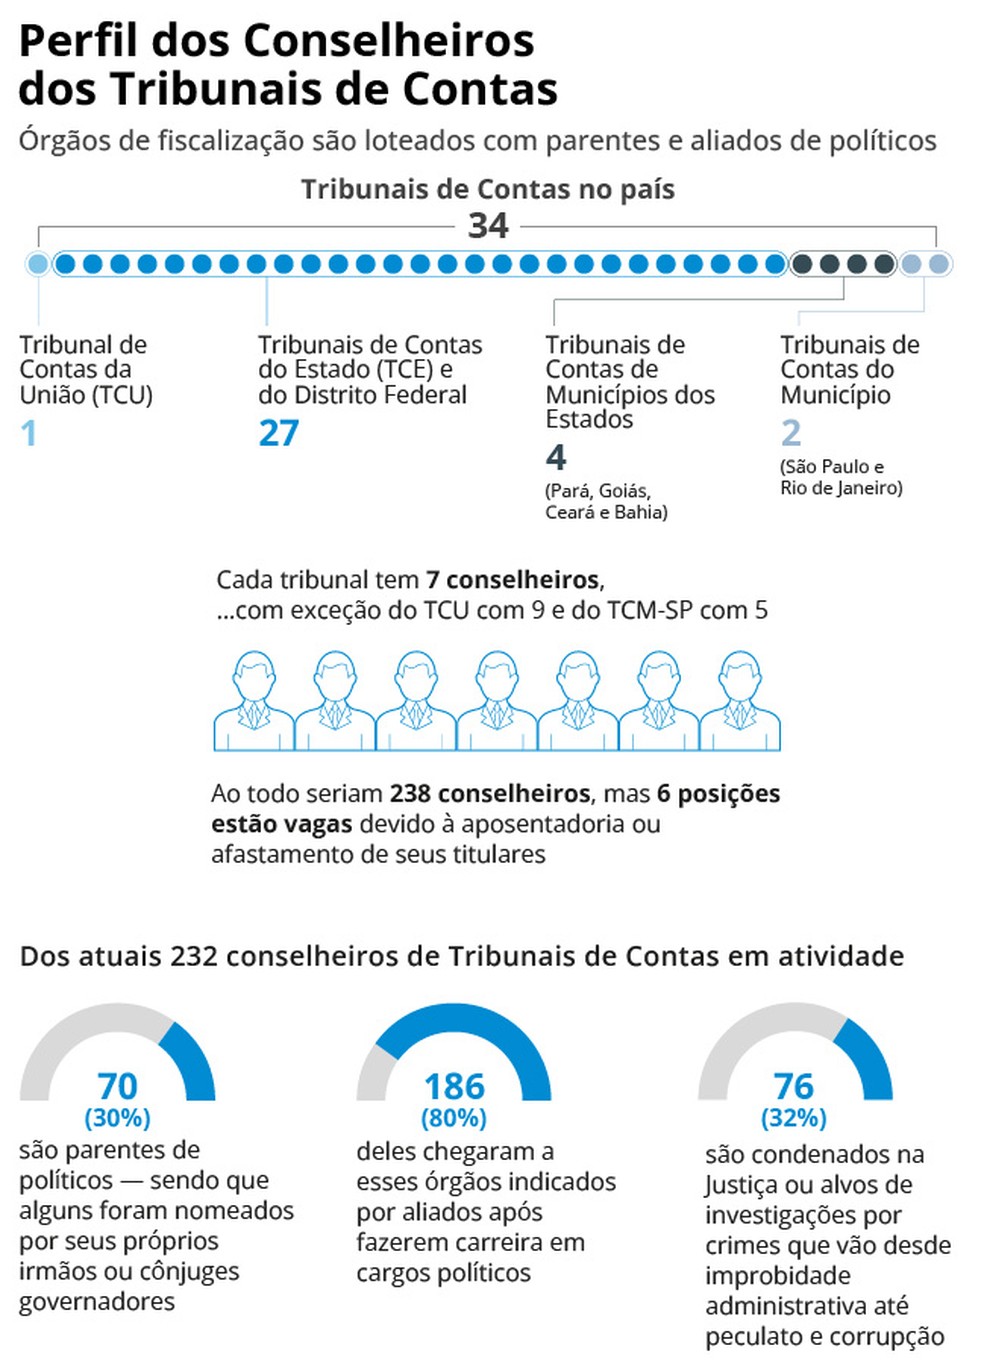 Infográfico mostra o perfil dos conselheiros dos tribunais de Contas — Foto: Editoria de Arte